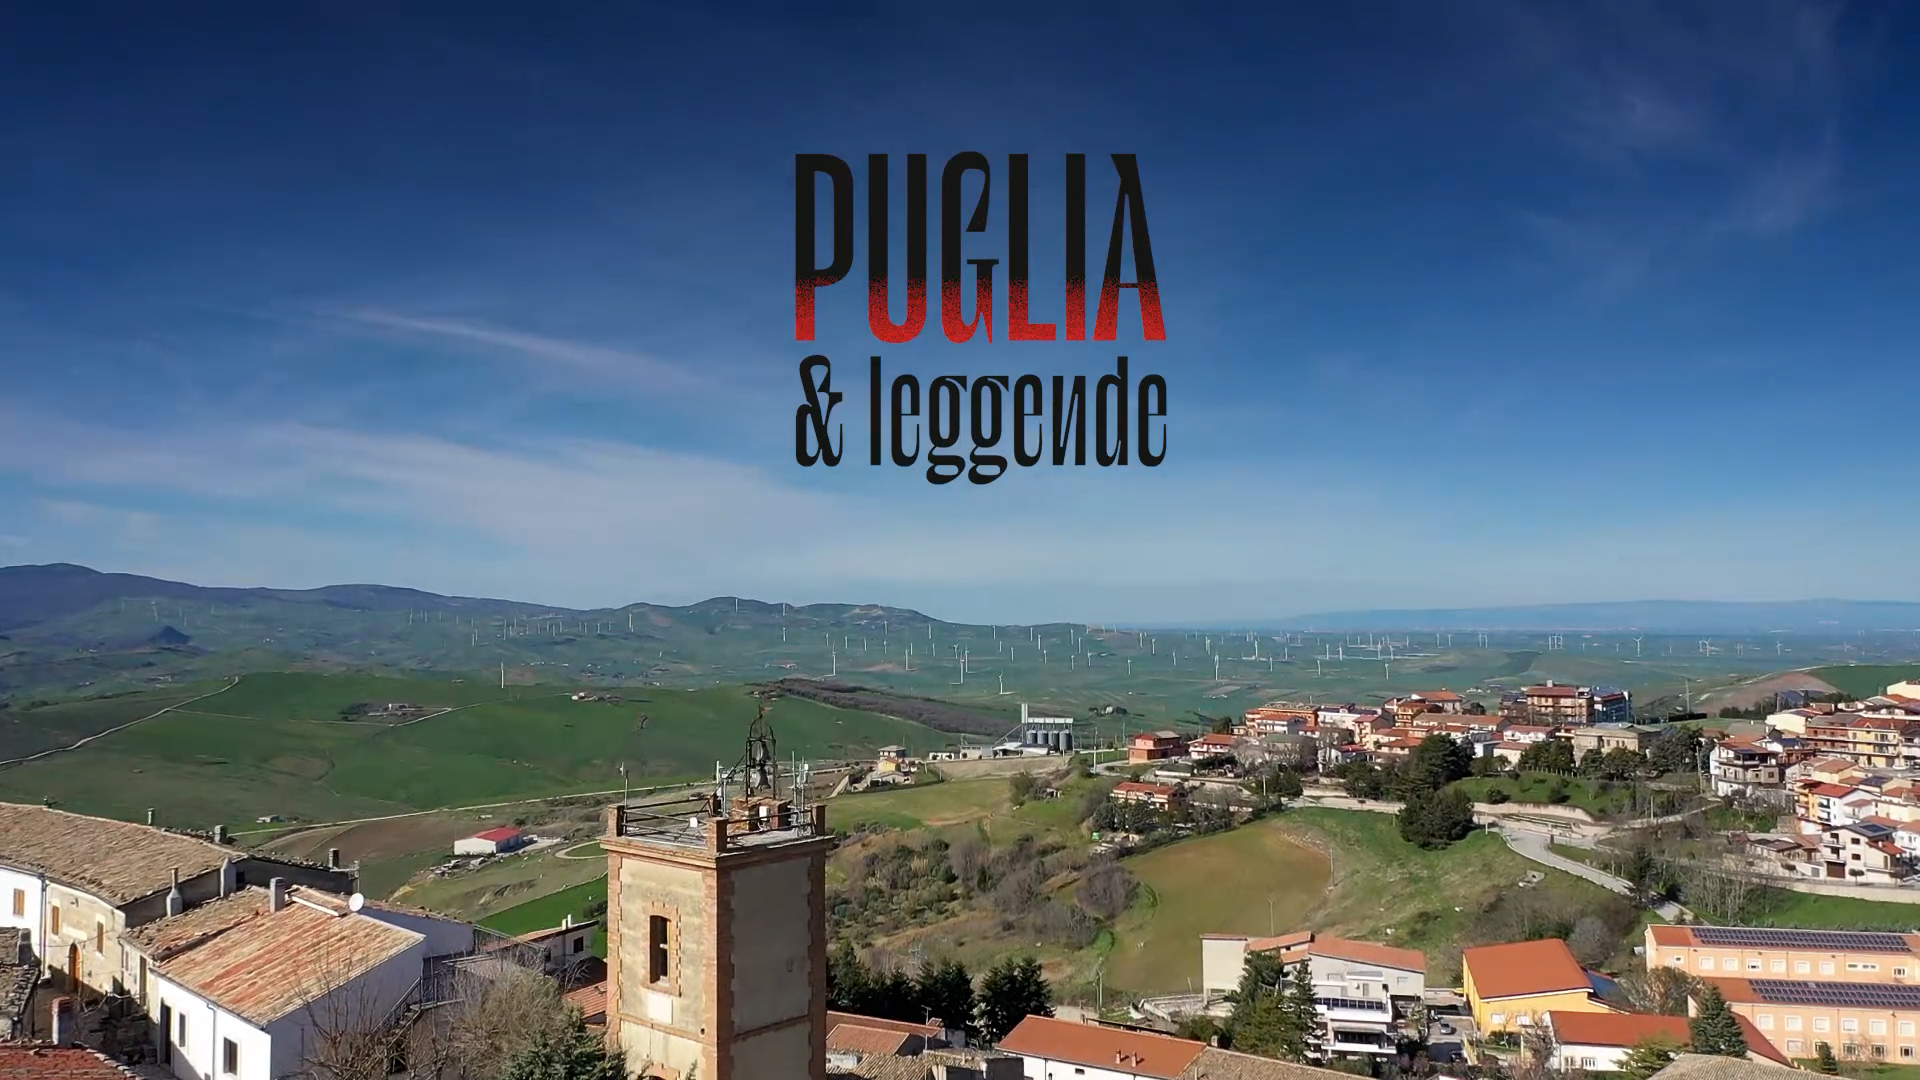 Al via la webserie "Puglia & Leggende", alla scoperta di luoghi misteriosi e storie avvincenti